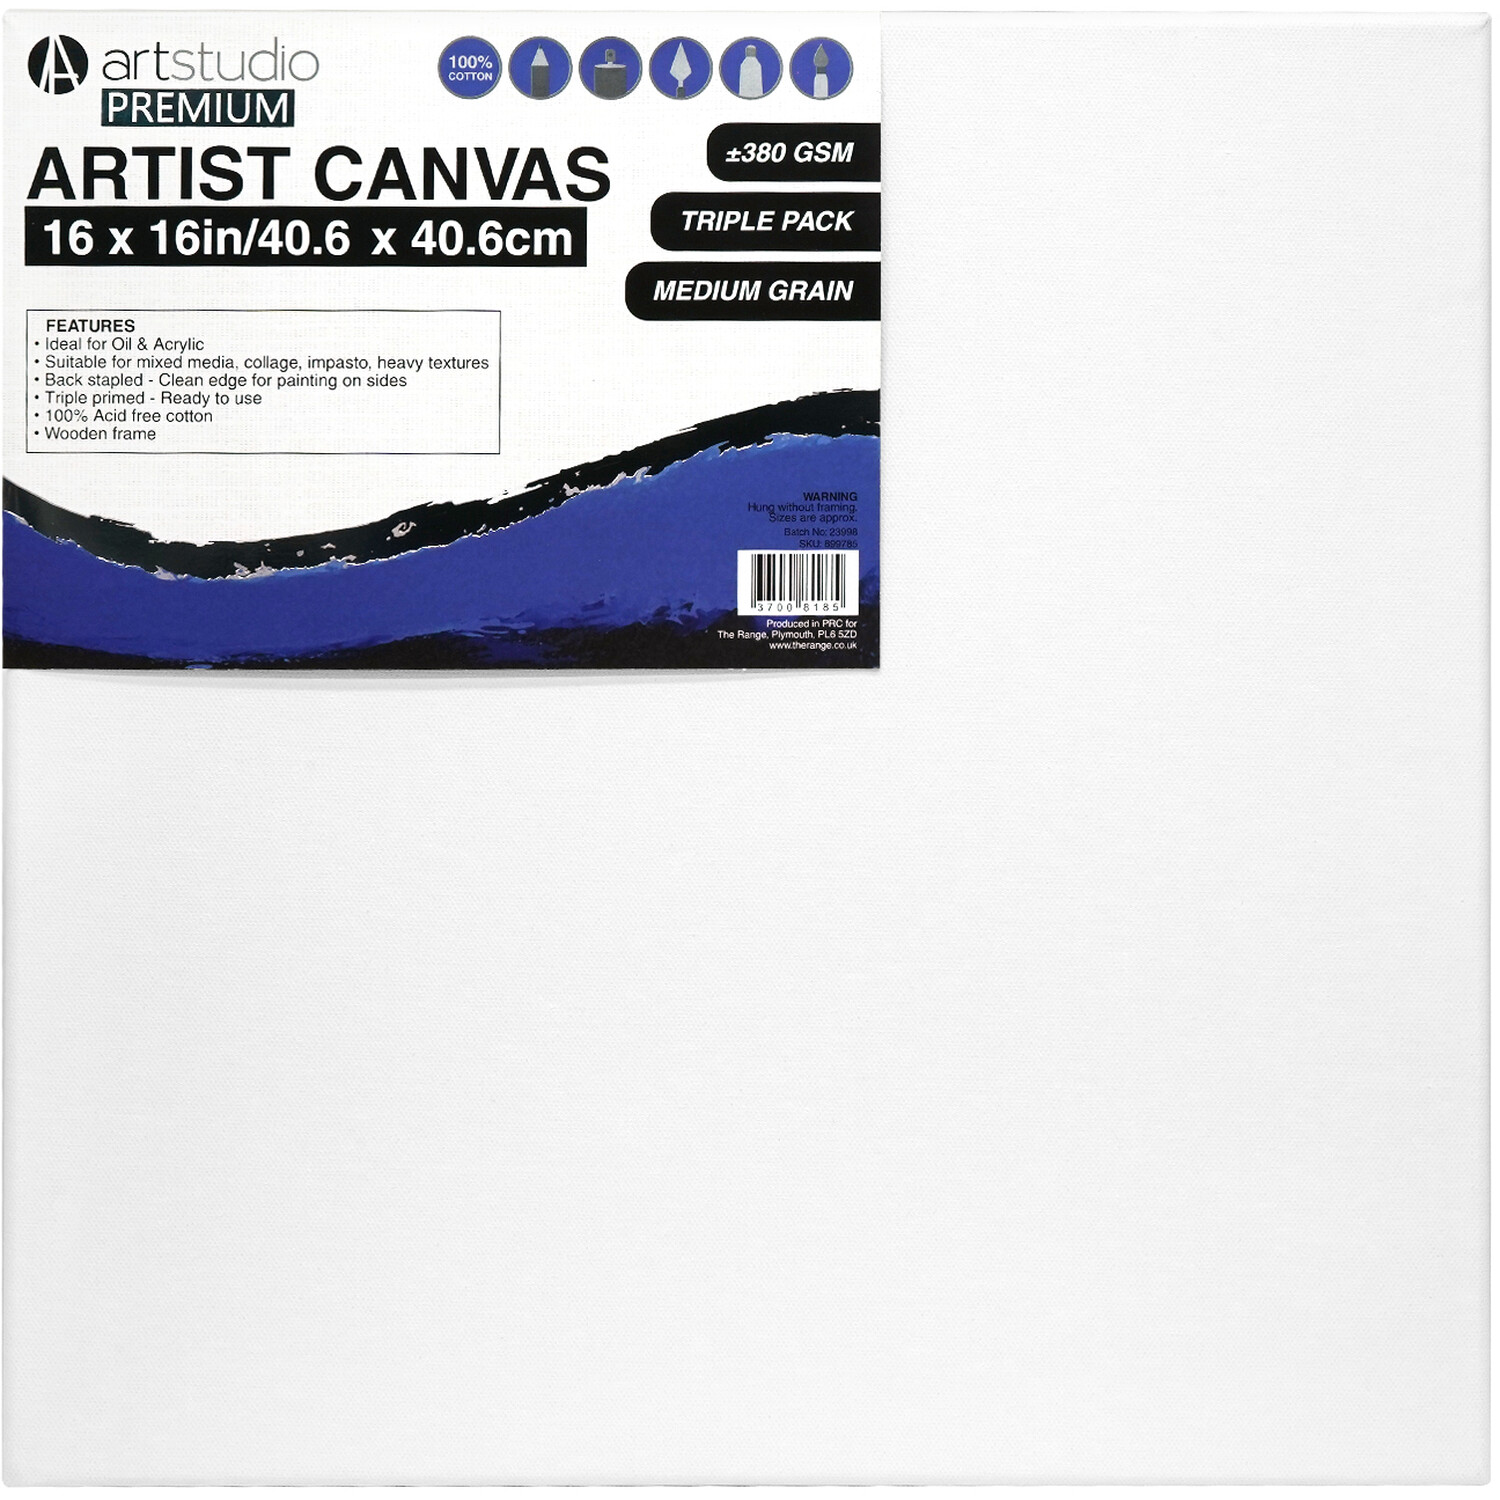 Art Studio Premium Artist Canvas 40.6cm 3 Pack Image 1